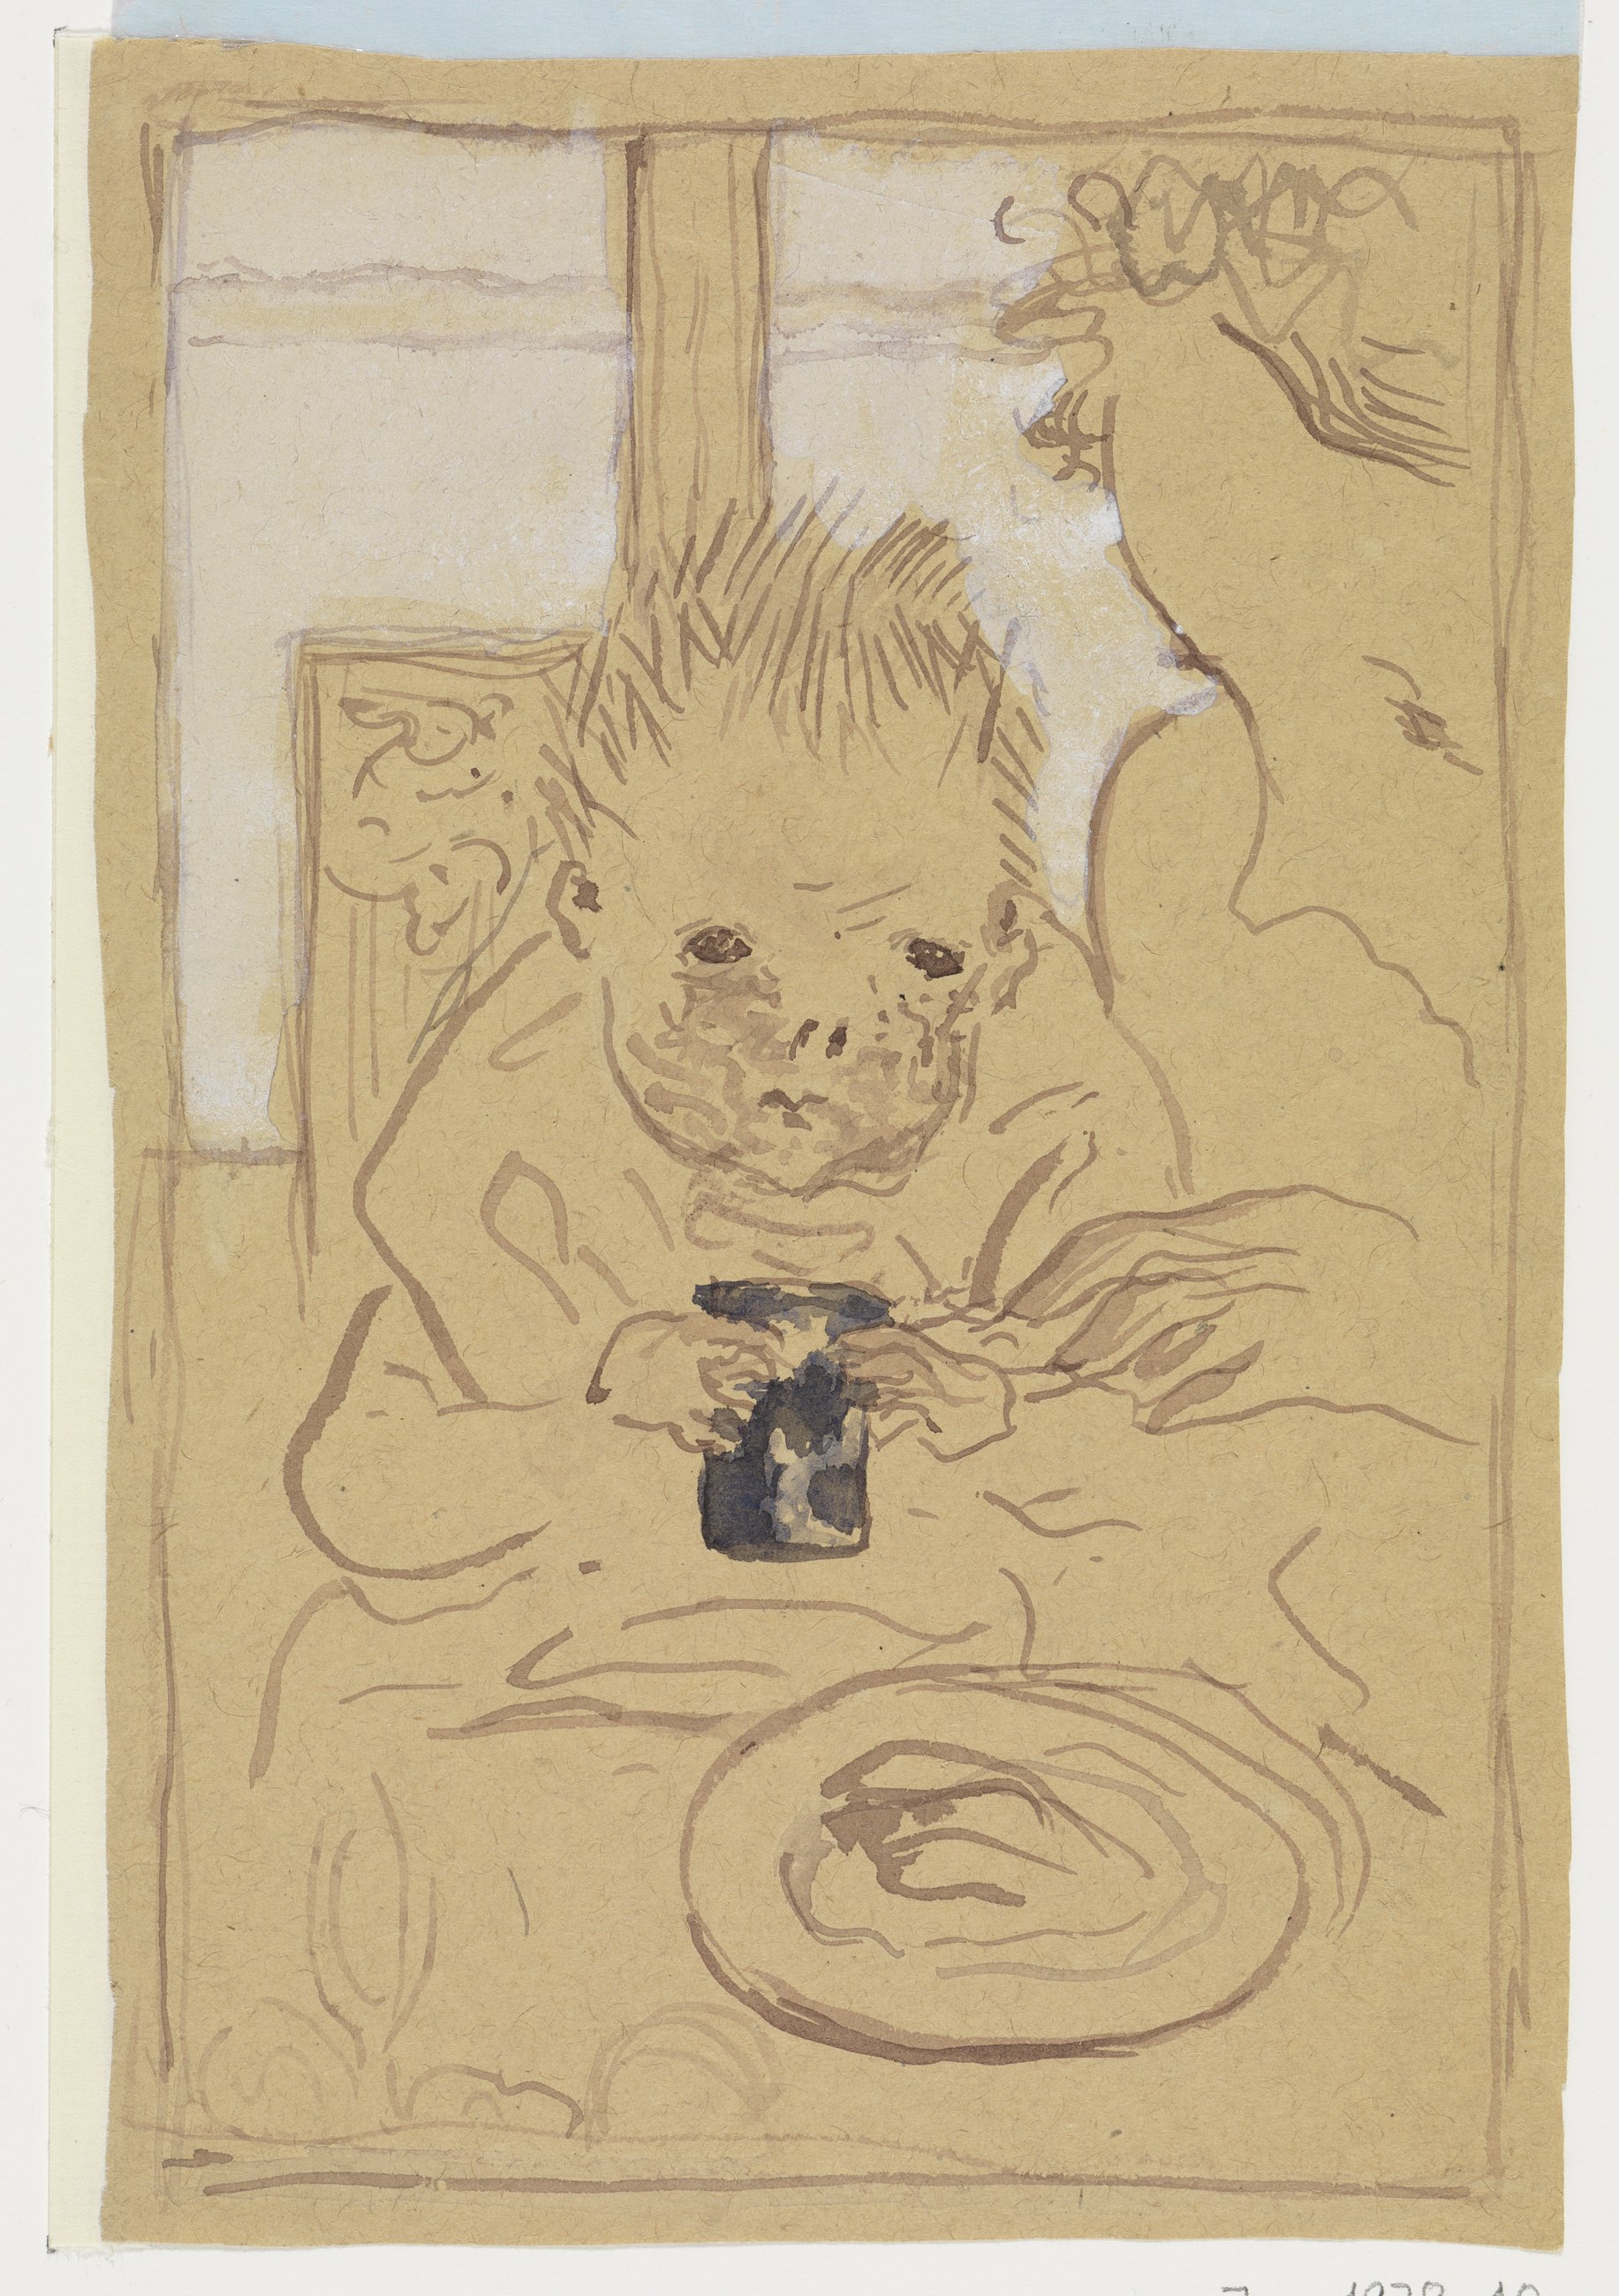 Abbildung des Werks Mutter und Kind von Pierre Bonnard, entstanden 1893/94. Es zeigt ein Kind welches isst. 